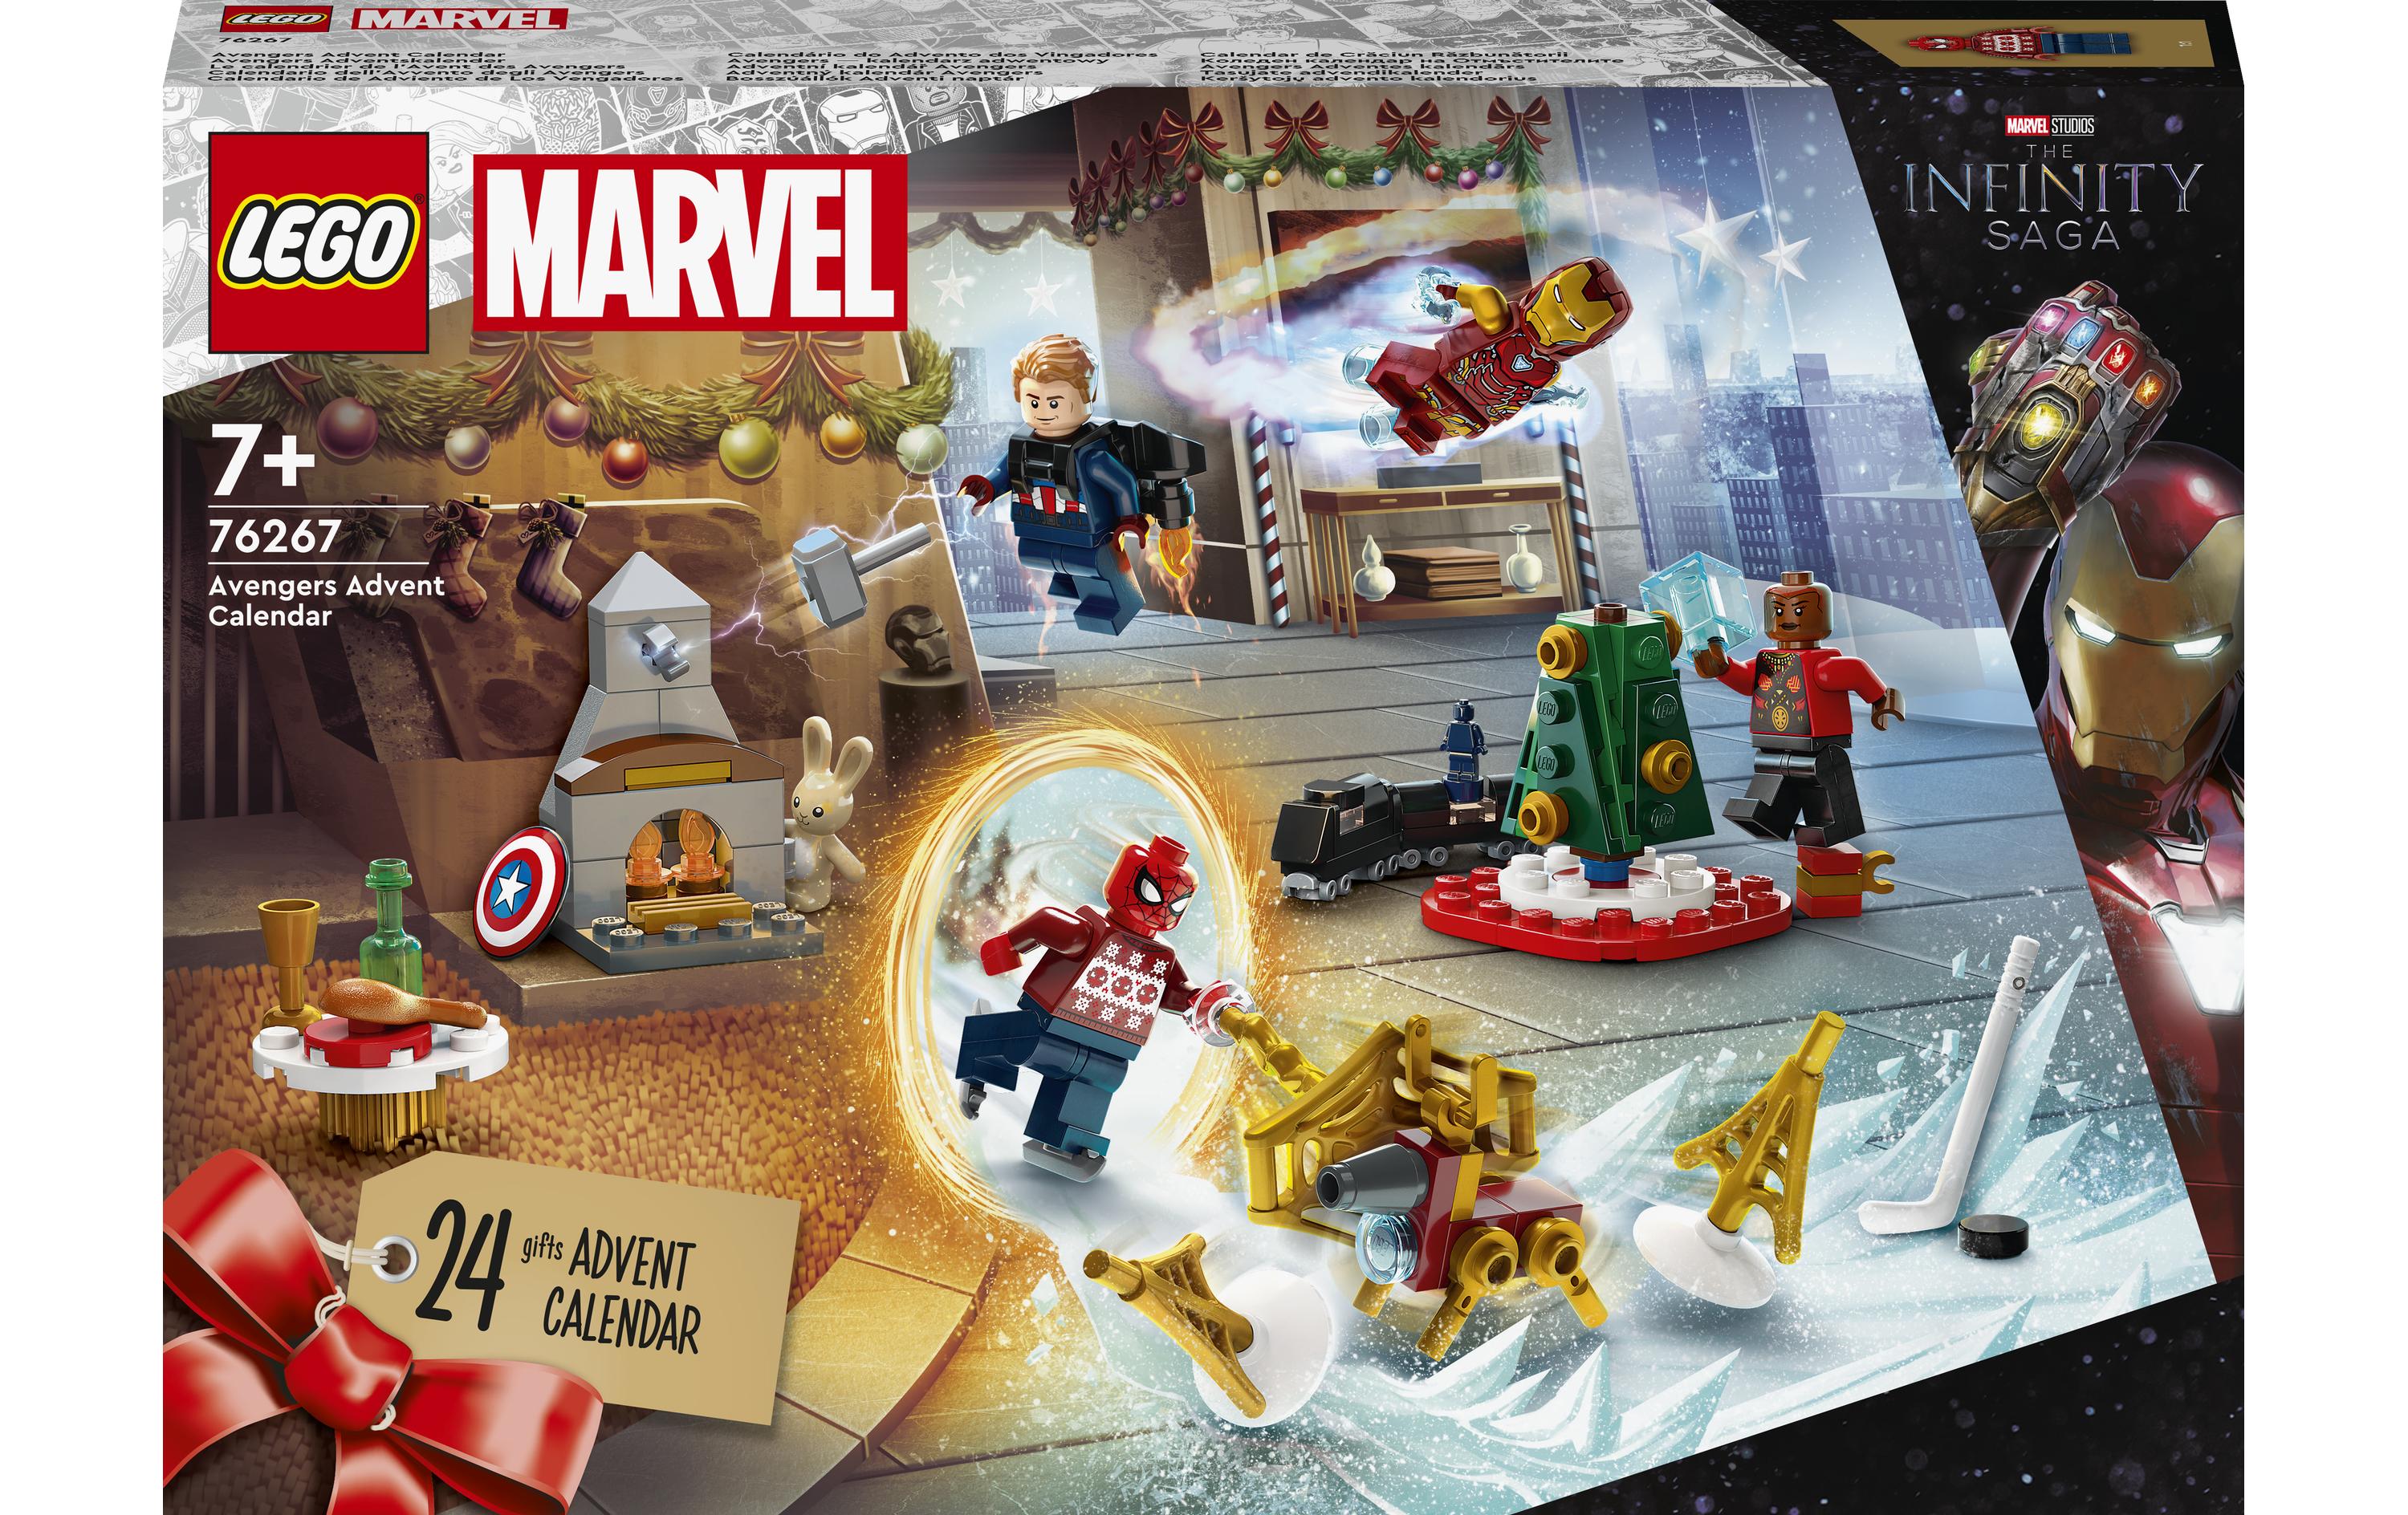 LEGO® Adventskalender Marvel Avengers 76267 - im GOLDSTIEN.SHOP verfügbar mit Gratisversand ab Schweizer Lager! (5702017419848)